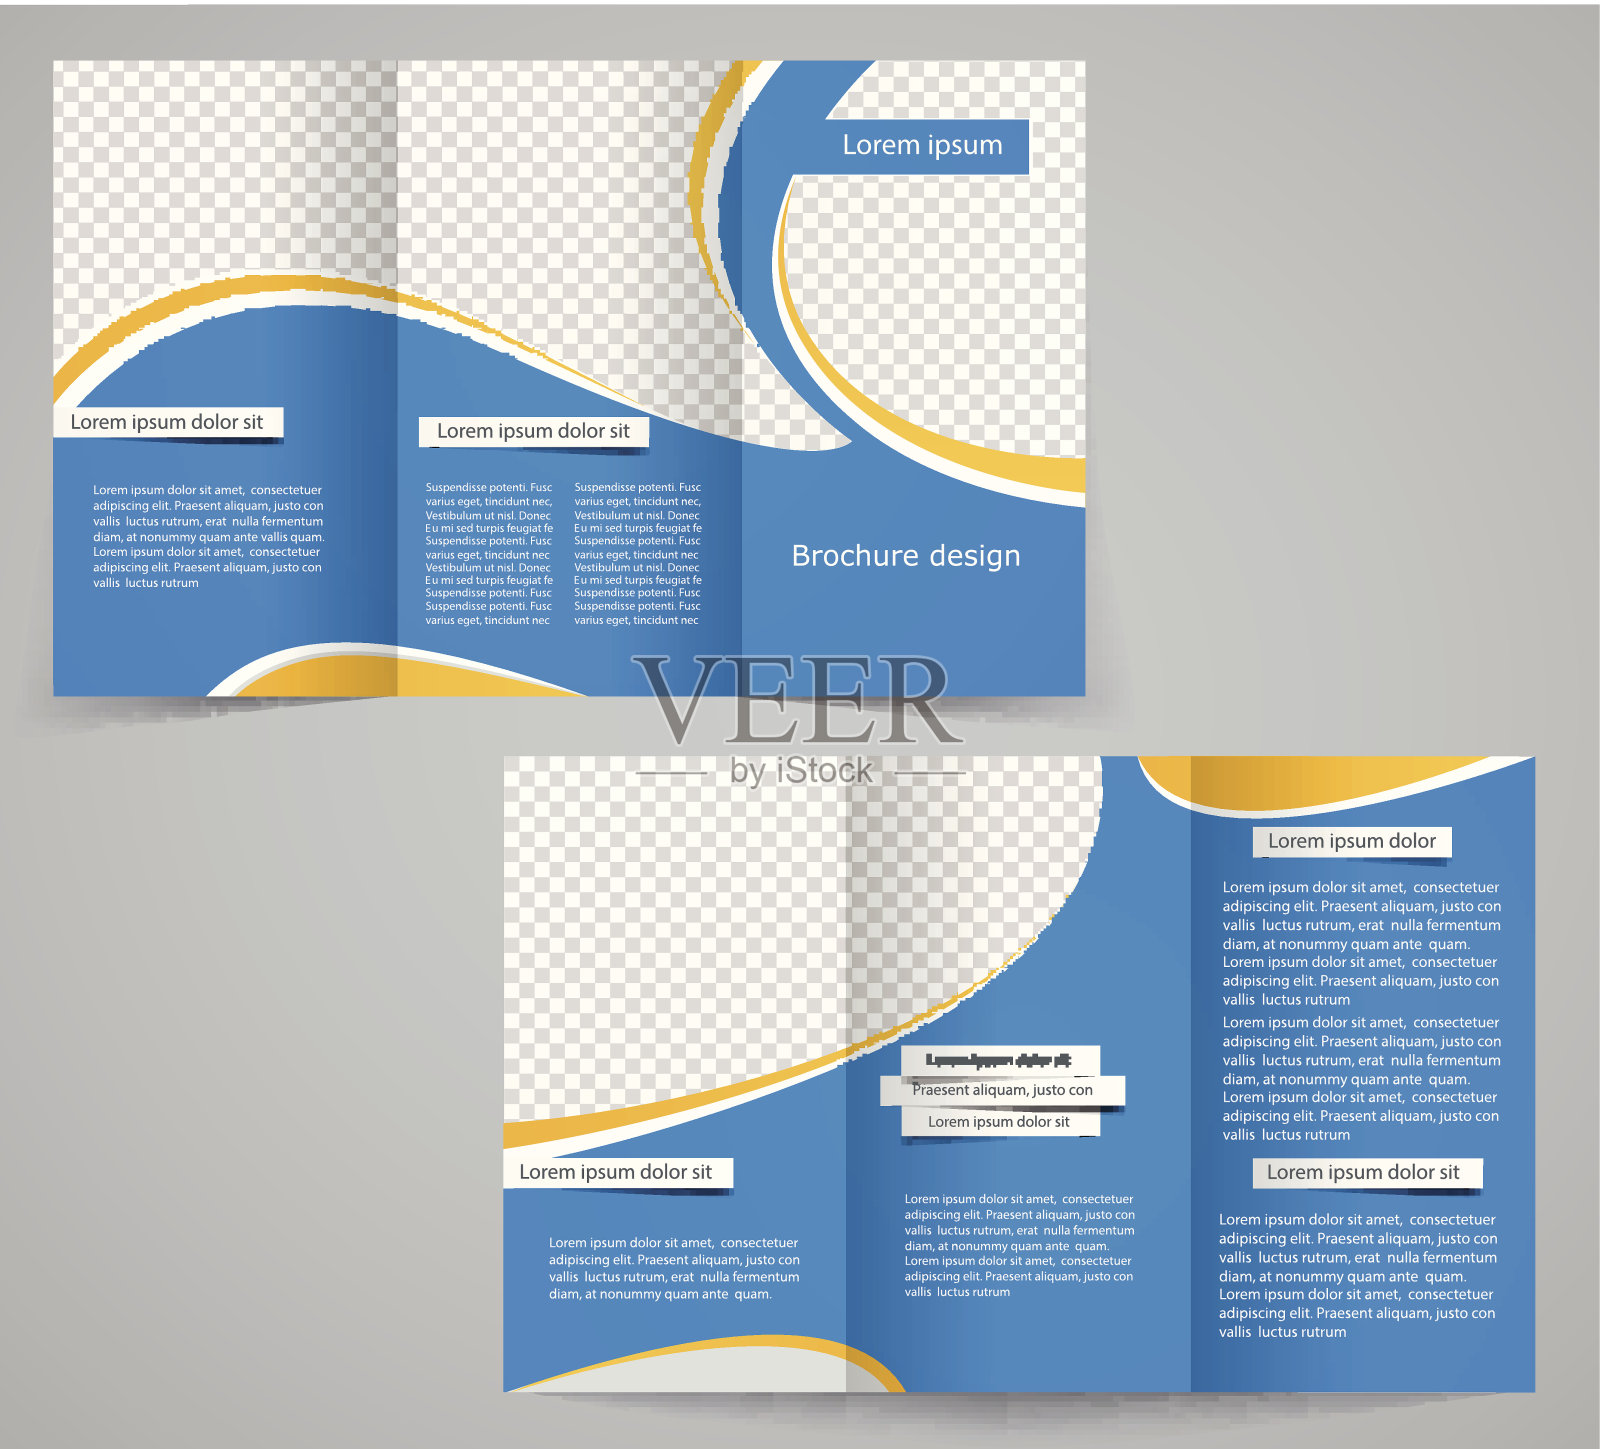 三叠商业宣传册模板，公司传单或封面设计设计模板素材